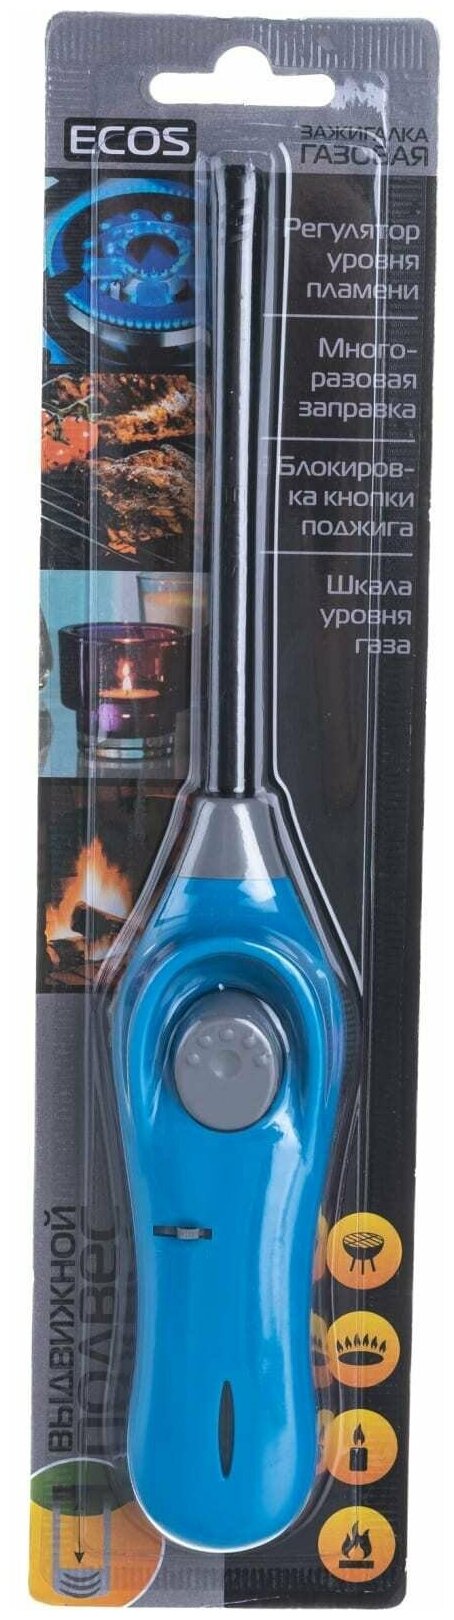 Зажигалка газовая Ecos GL-001B, цвет синий Леруа Мерлен - фото №2